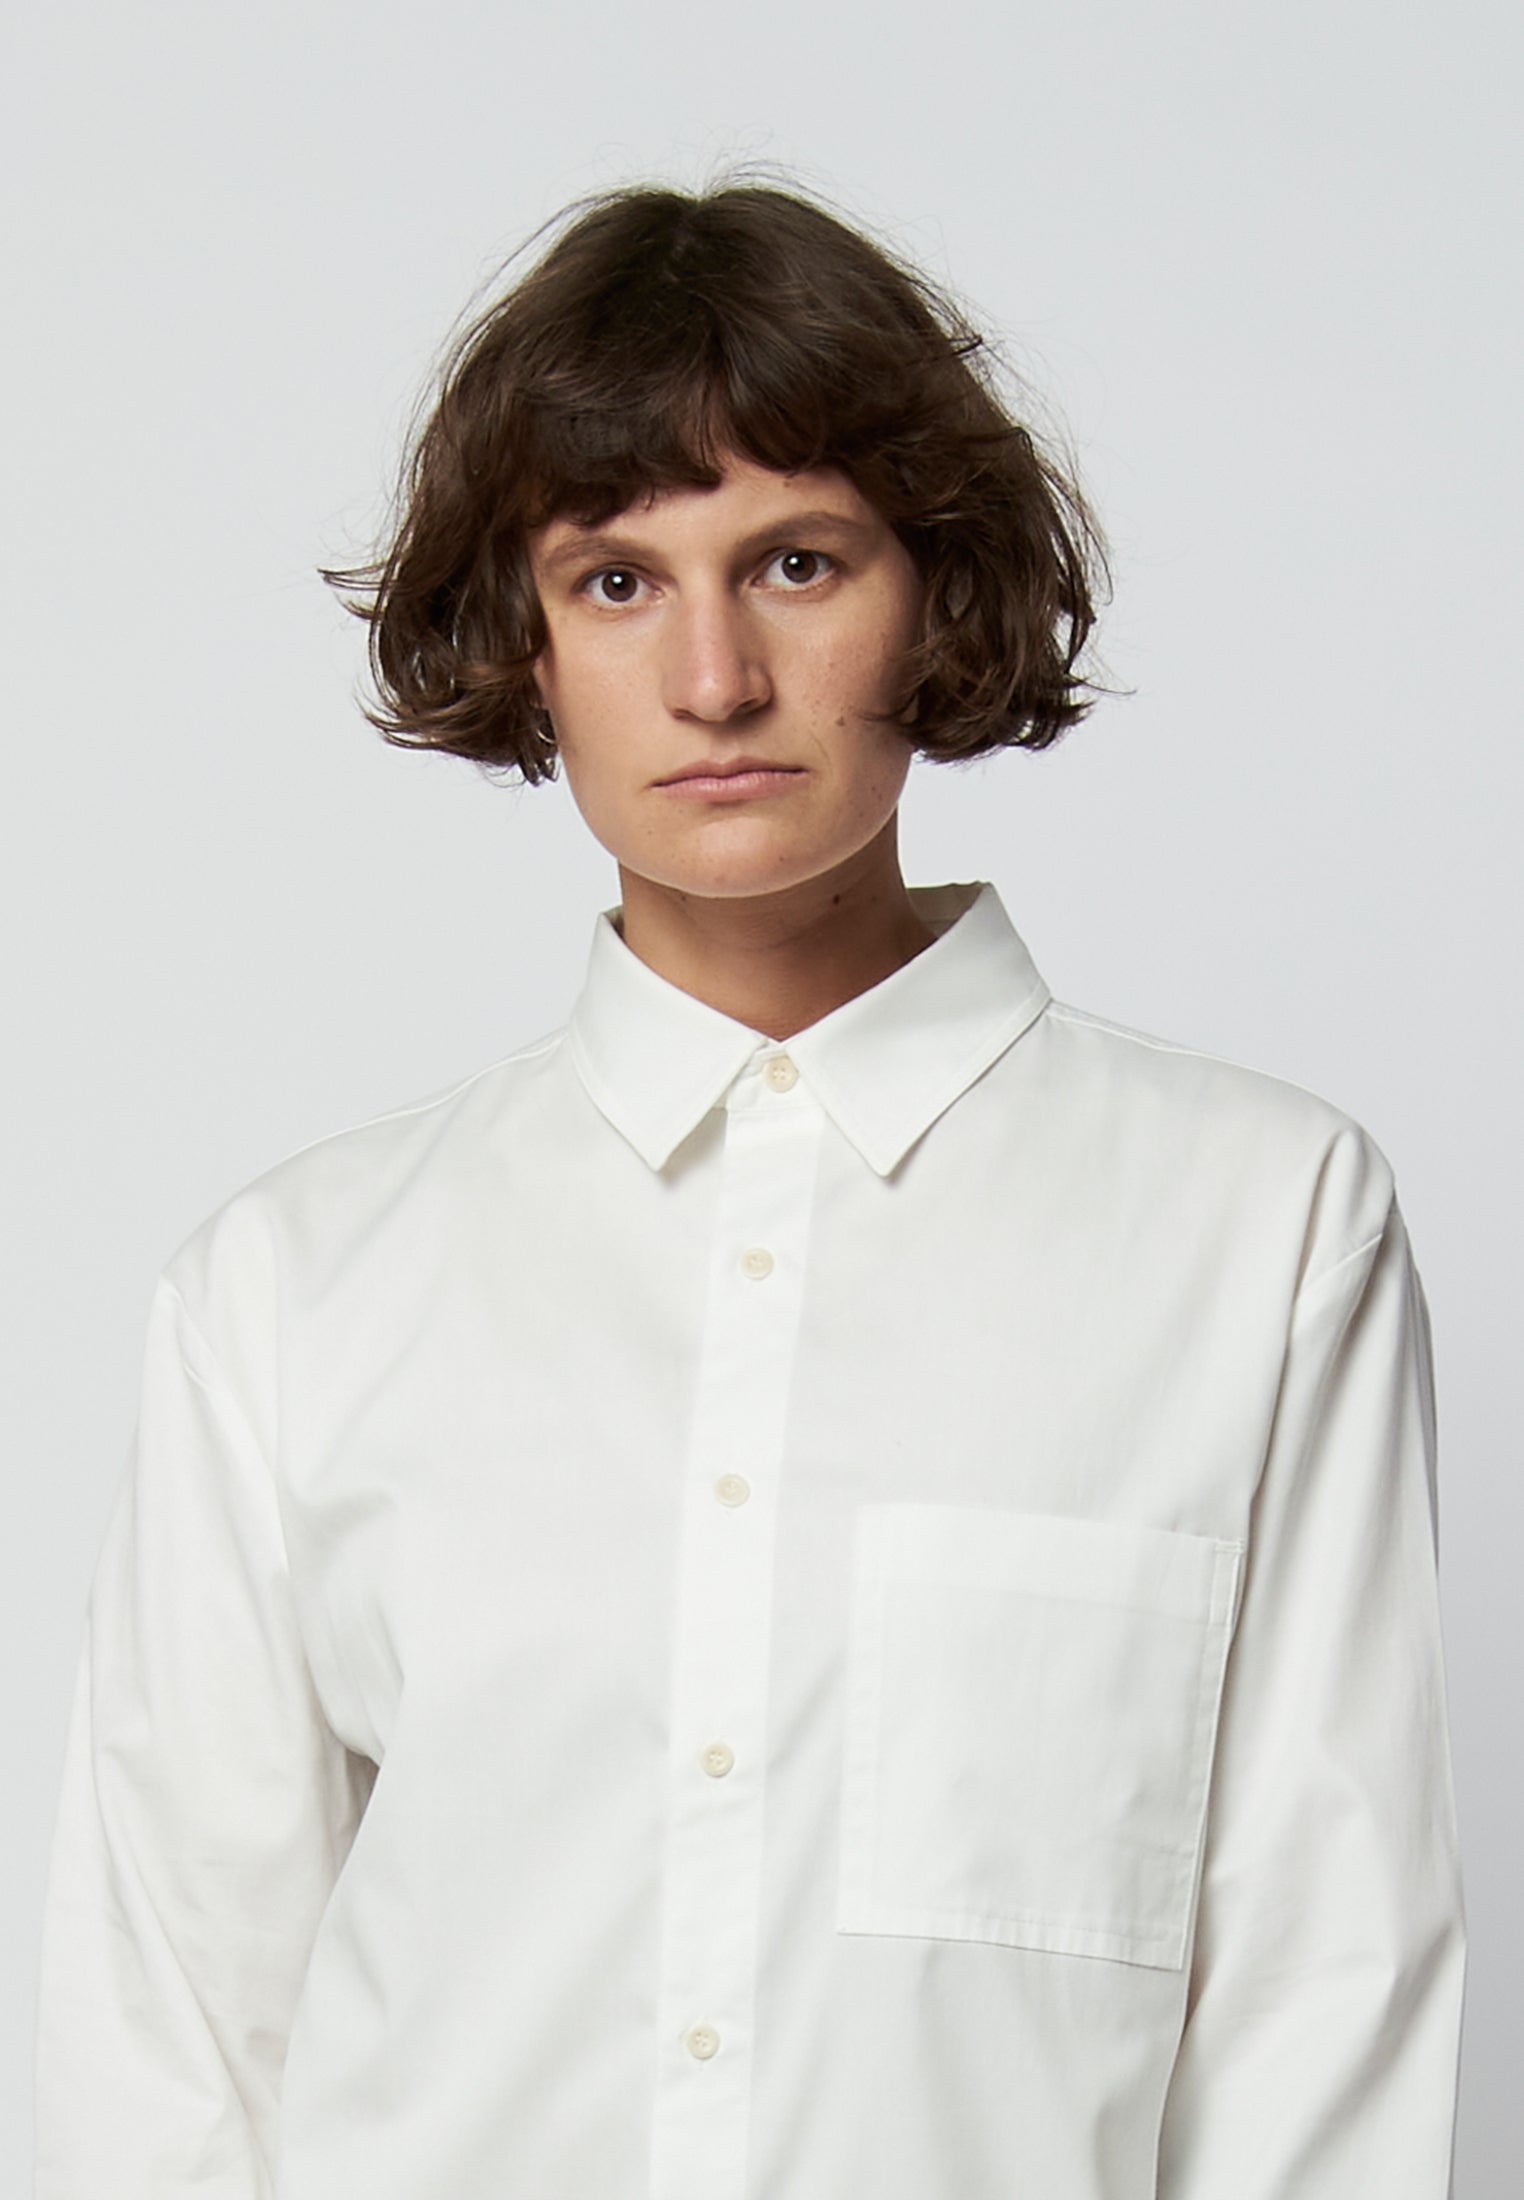 White organic cotton shirt ARLO